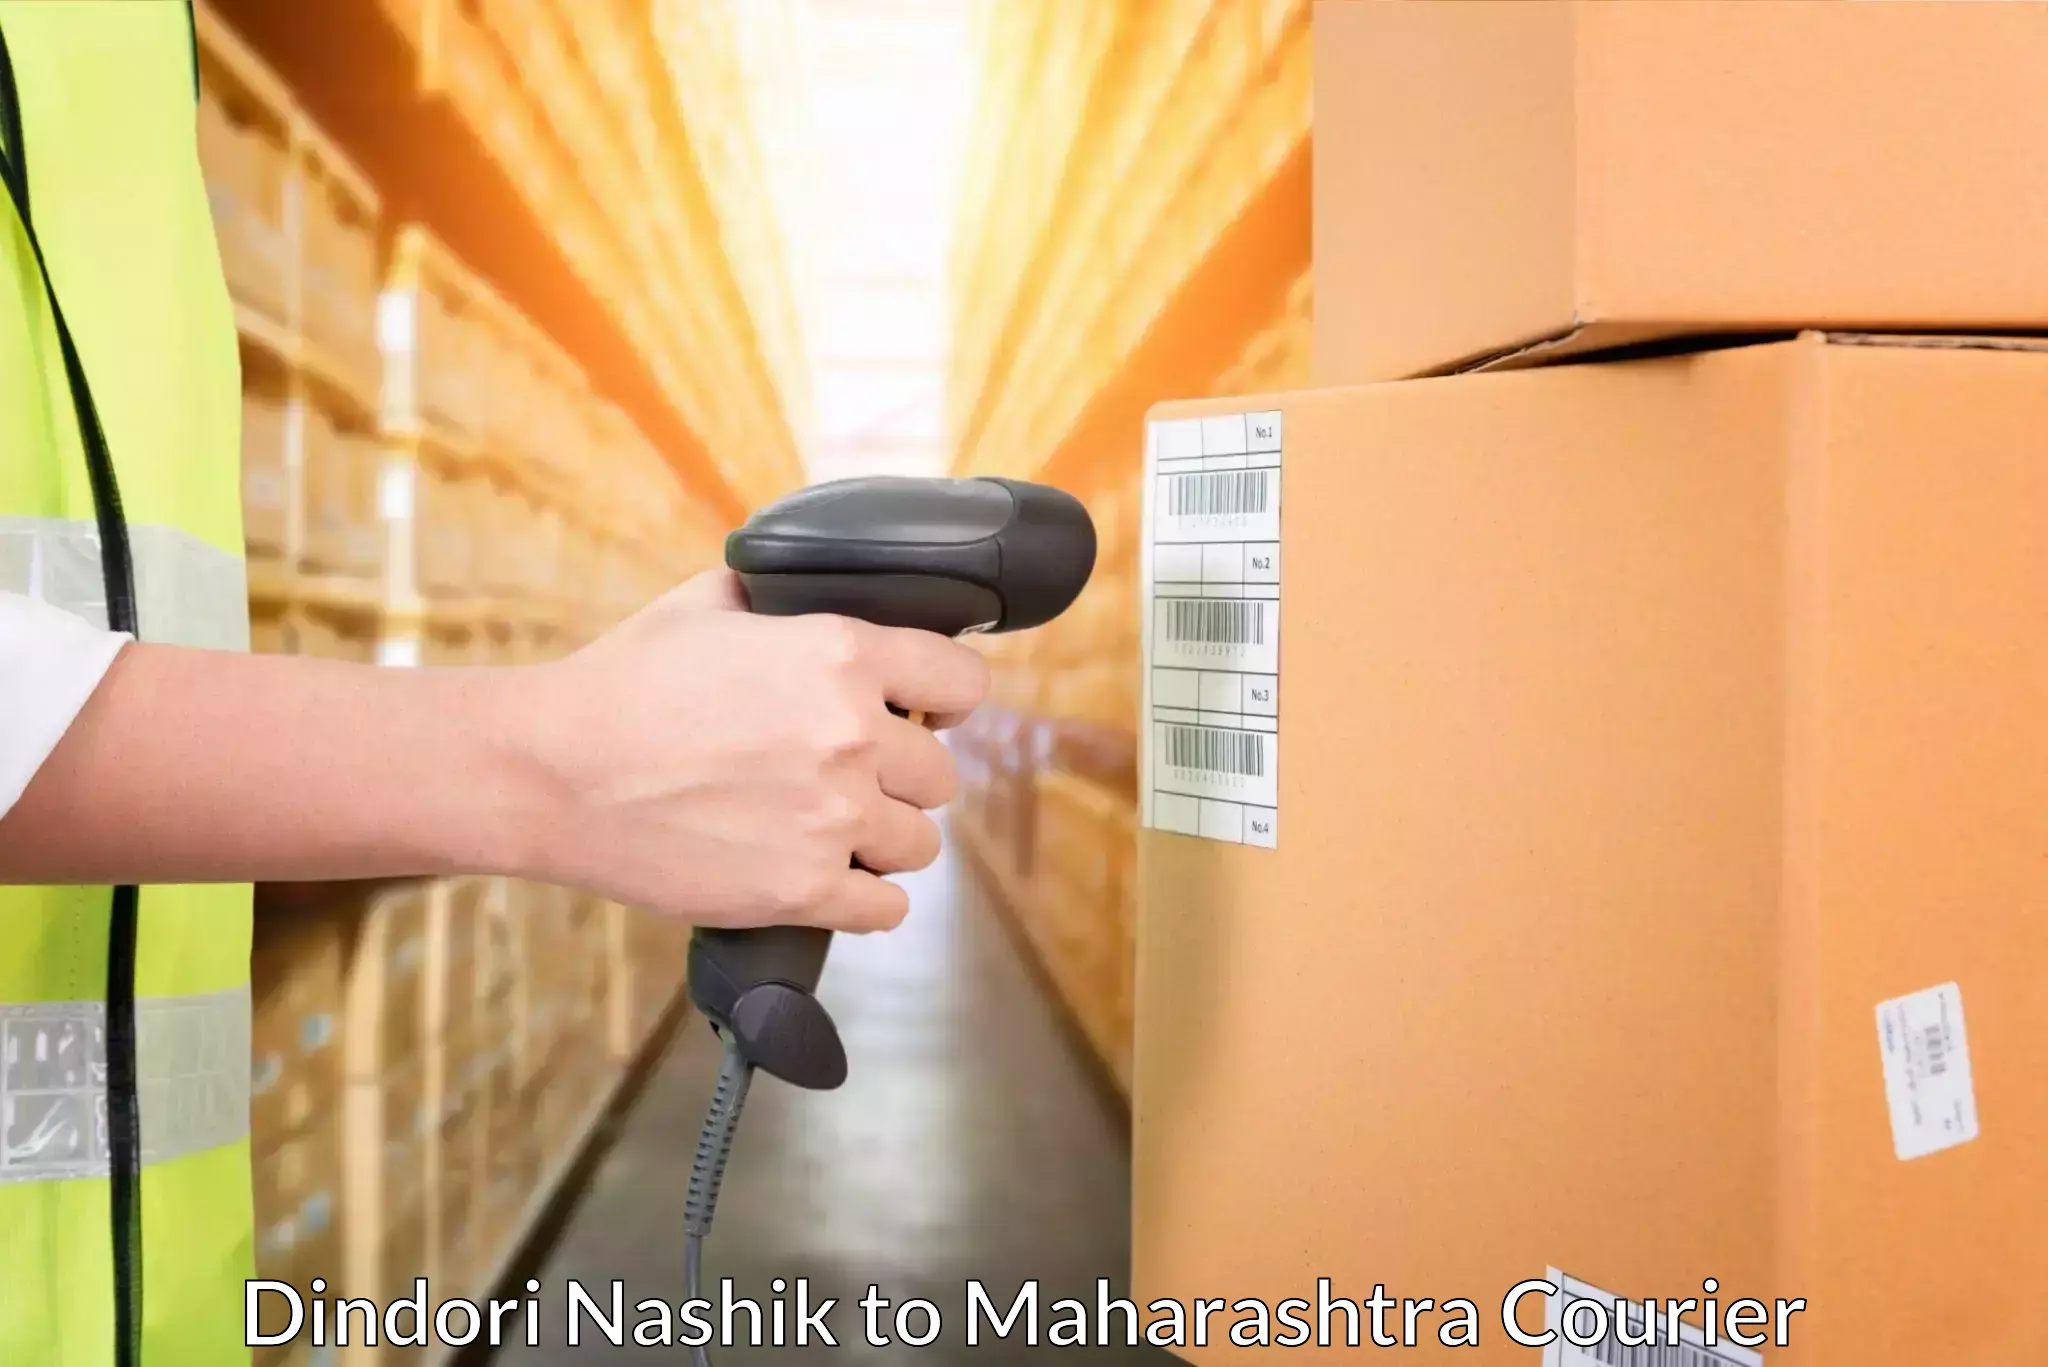 Tech-enabled shipping Dindori Nashik to Sindhudurg